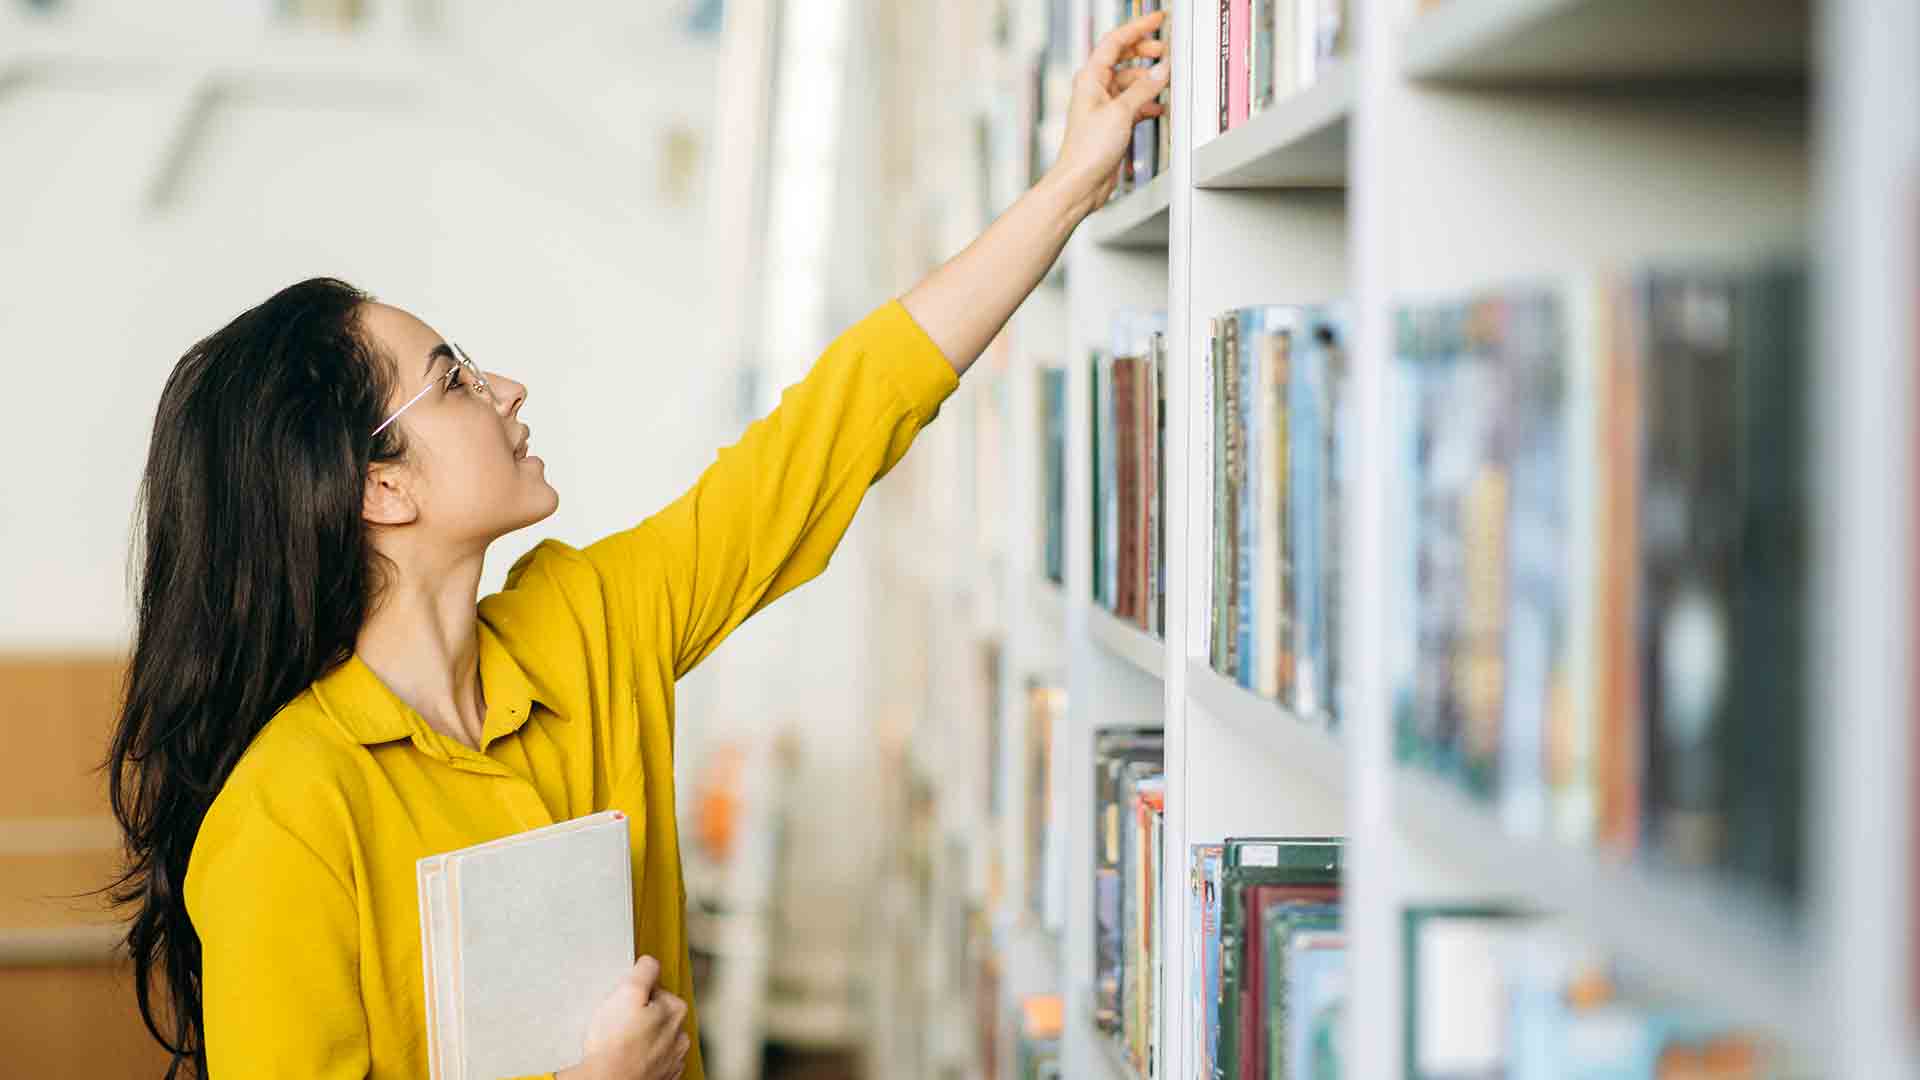 Stock image of library shelves © Shutterstock